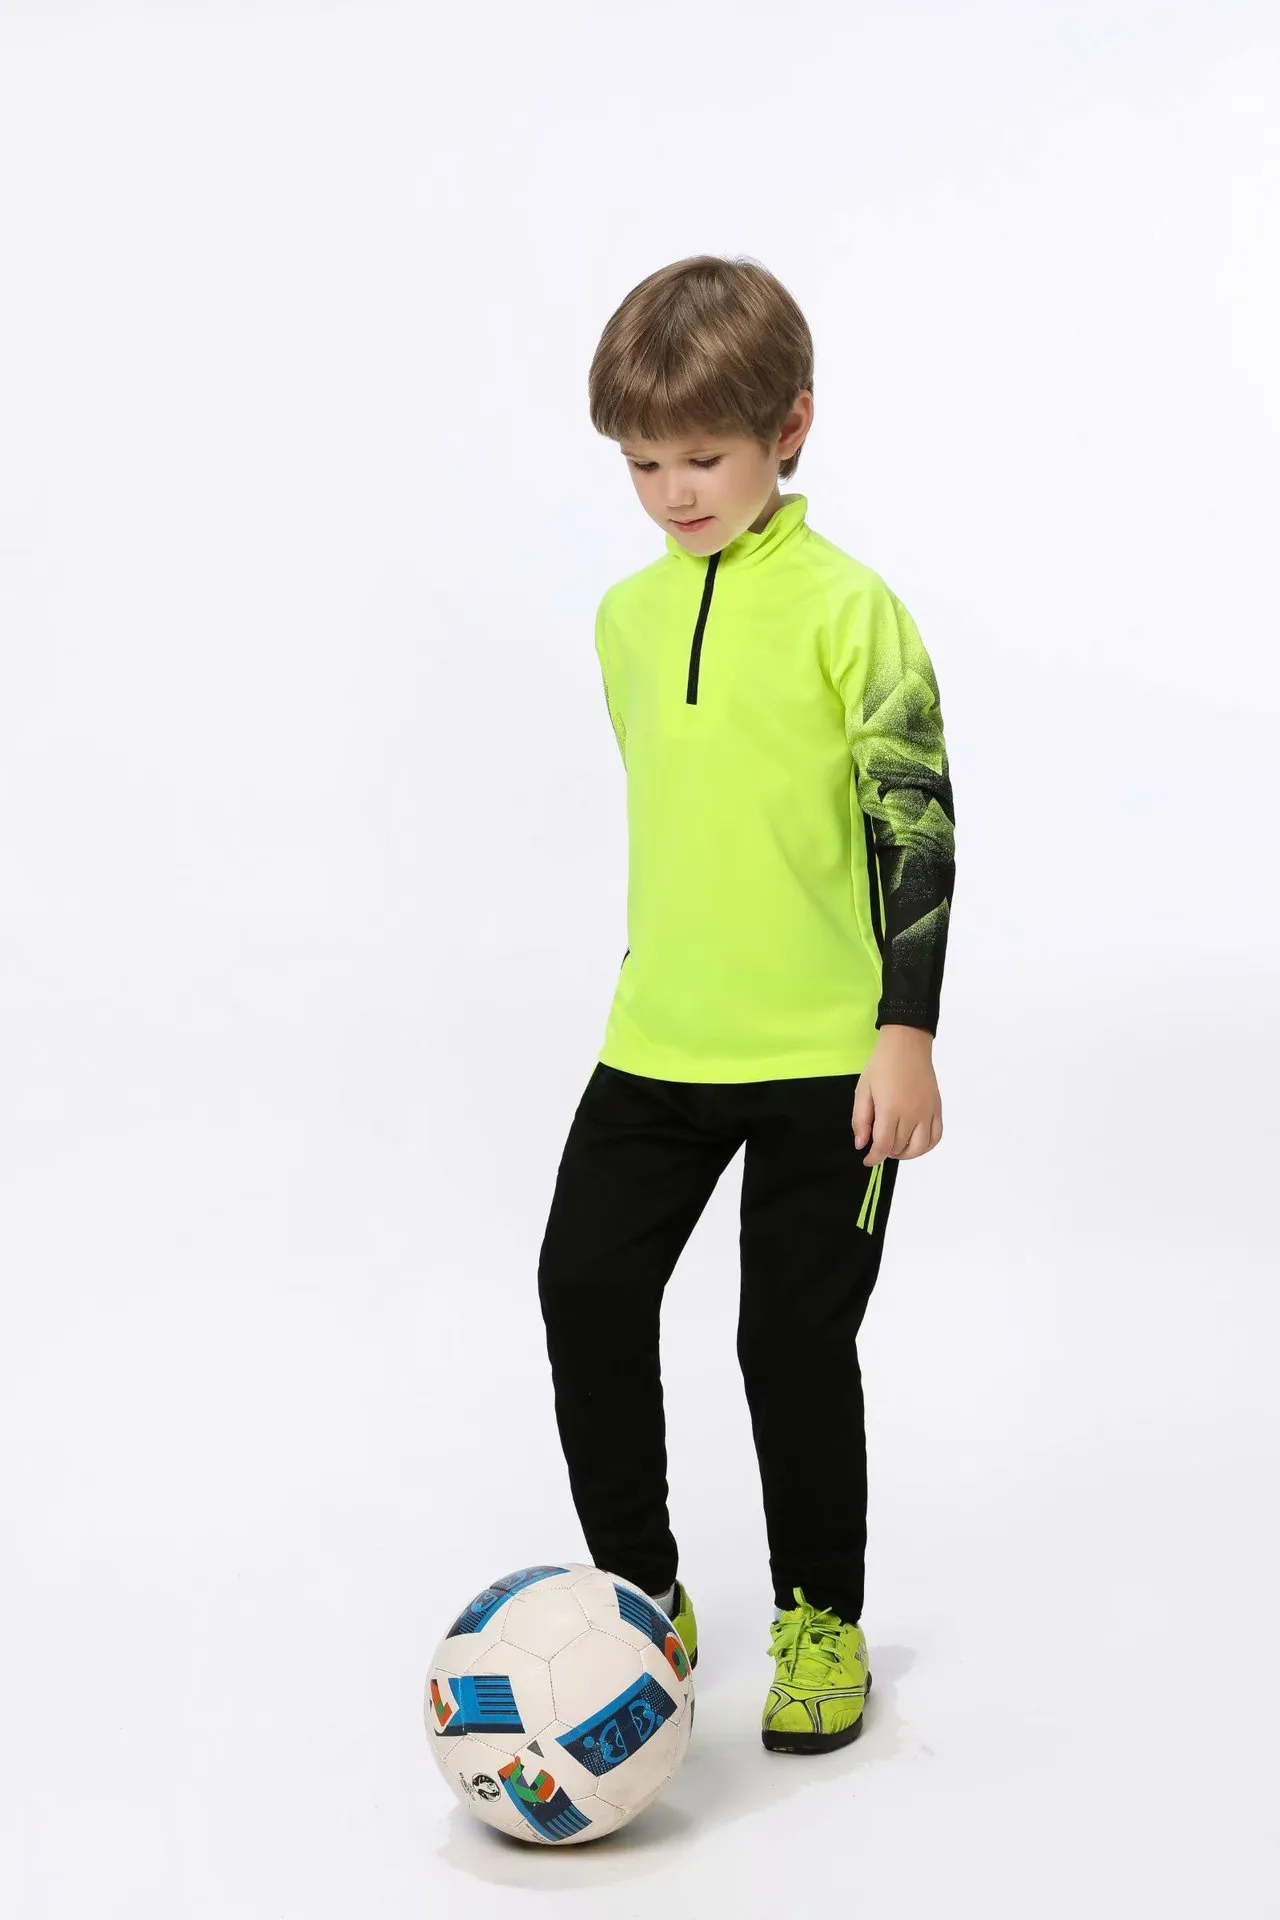 Jessie_kicks #hd61 oweens tasarım moda formaları çocuk giyim ourtdoor spor destek QC resimleri sevkiyattan önce